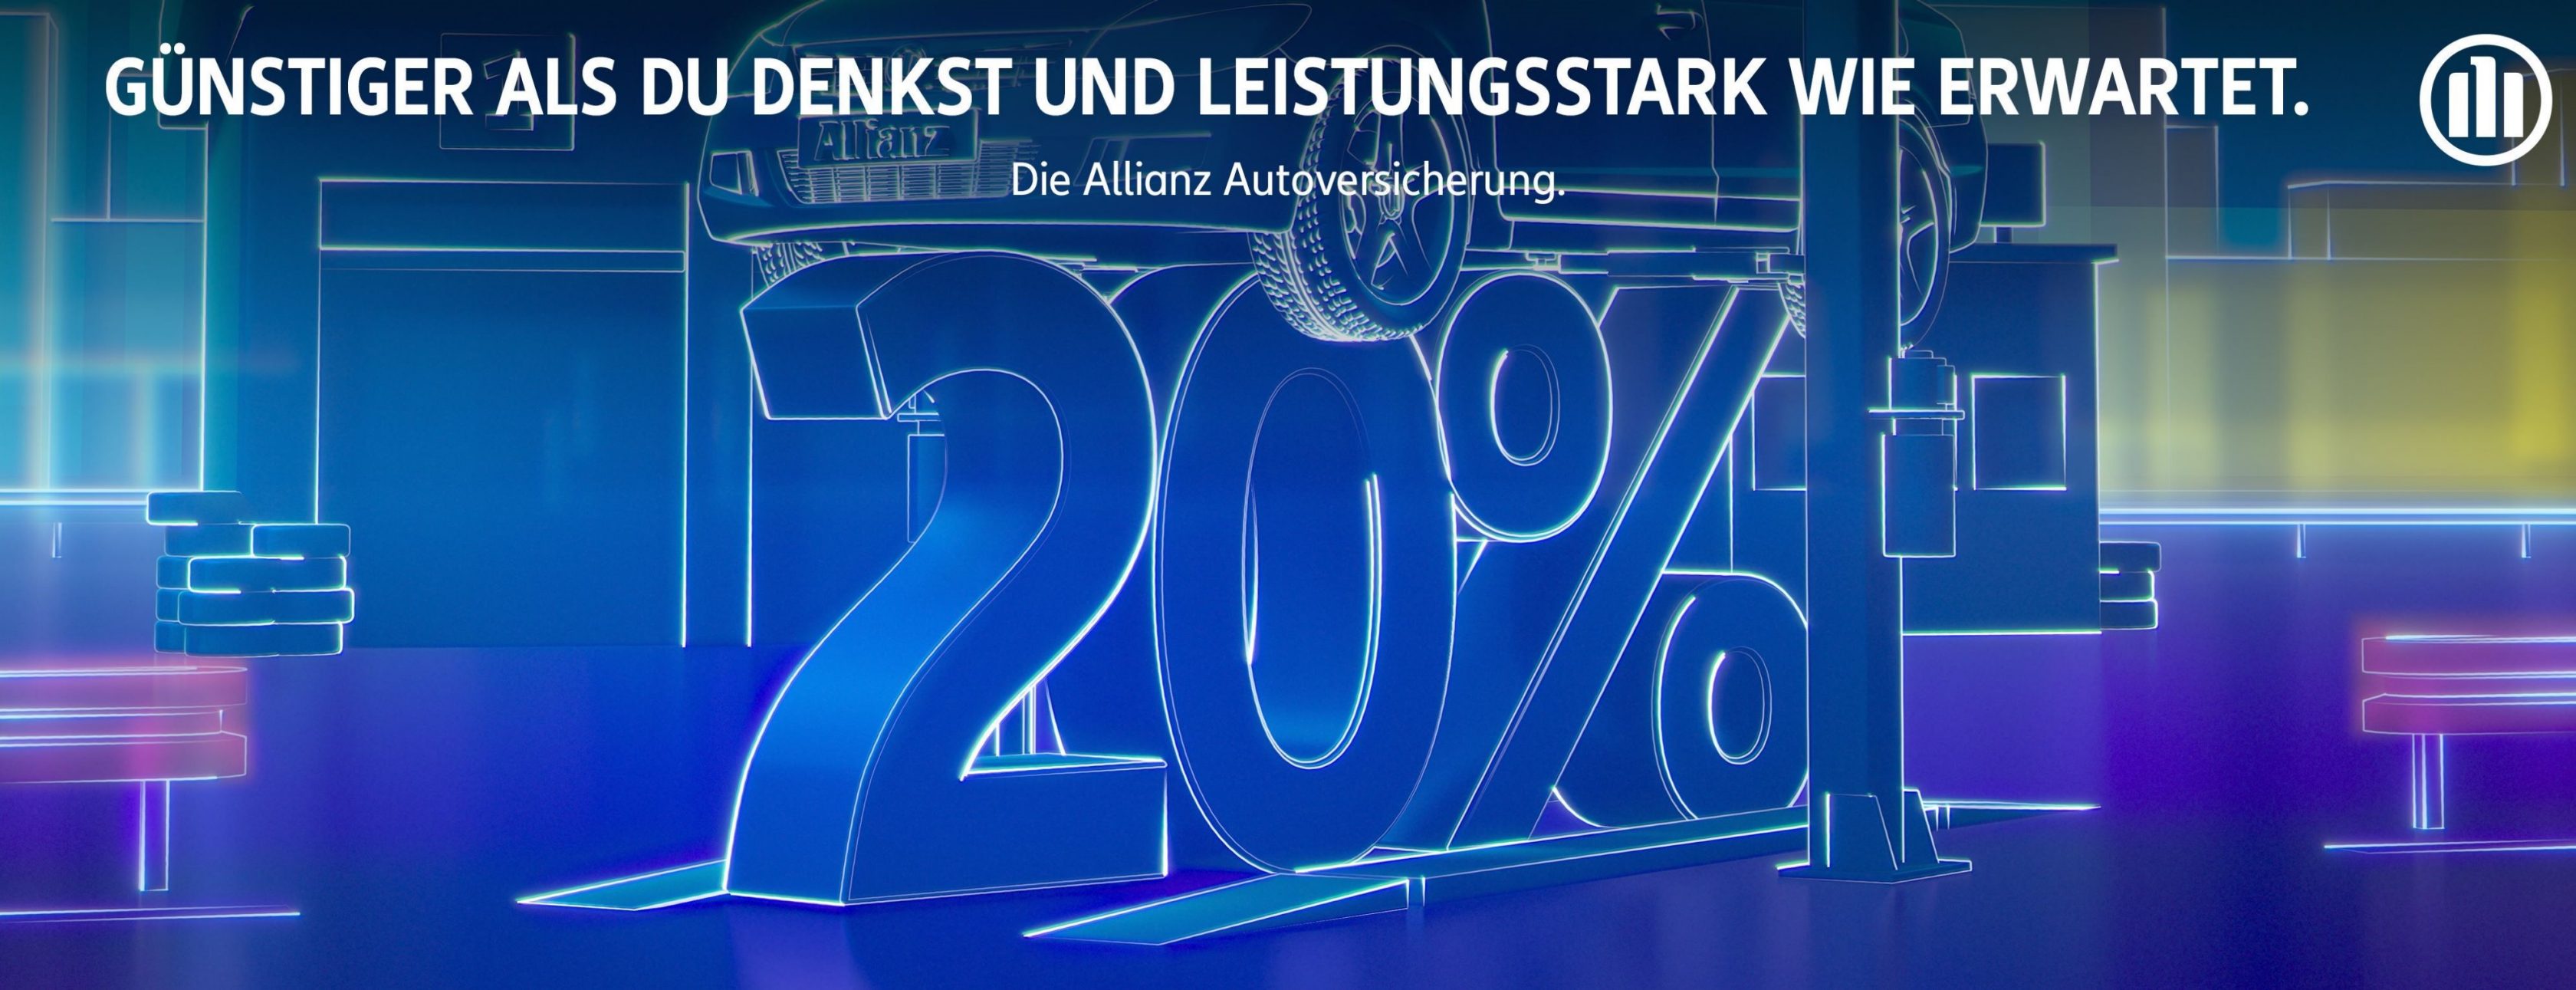 Allianz Versicherung Anita Vitello Neustadt an der Donau - KFZ Versicherung Wechsel 2021 Neustadt Donau